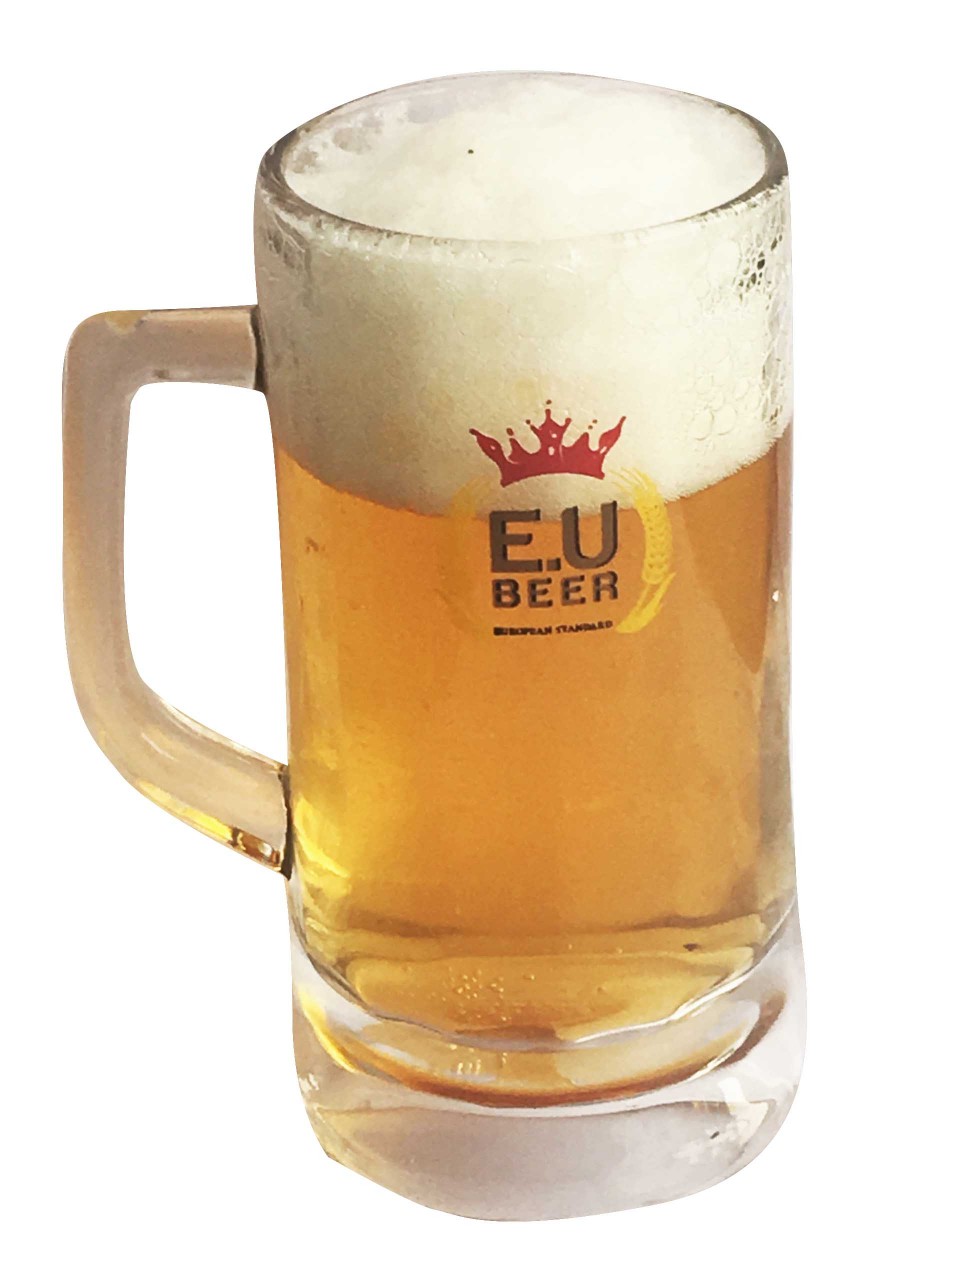 Bia EU - EU Beer - Công Ty TNHH MTV Quý Phú Lâm